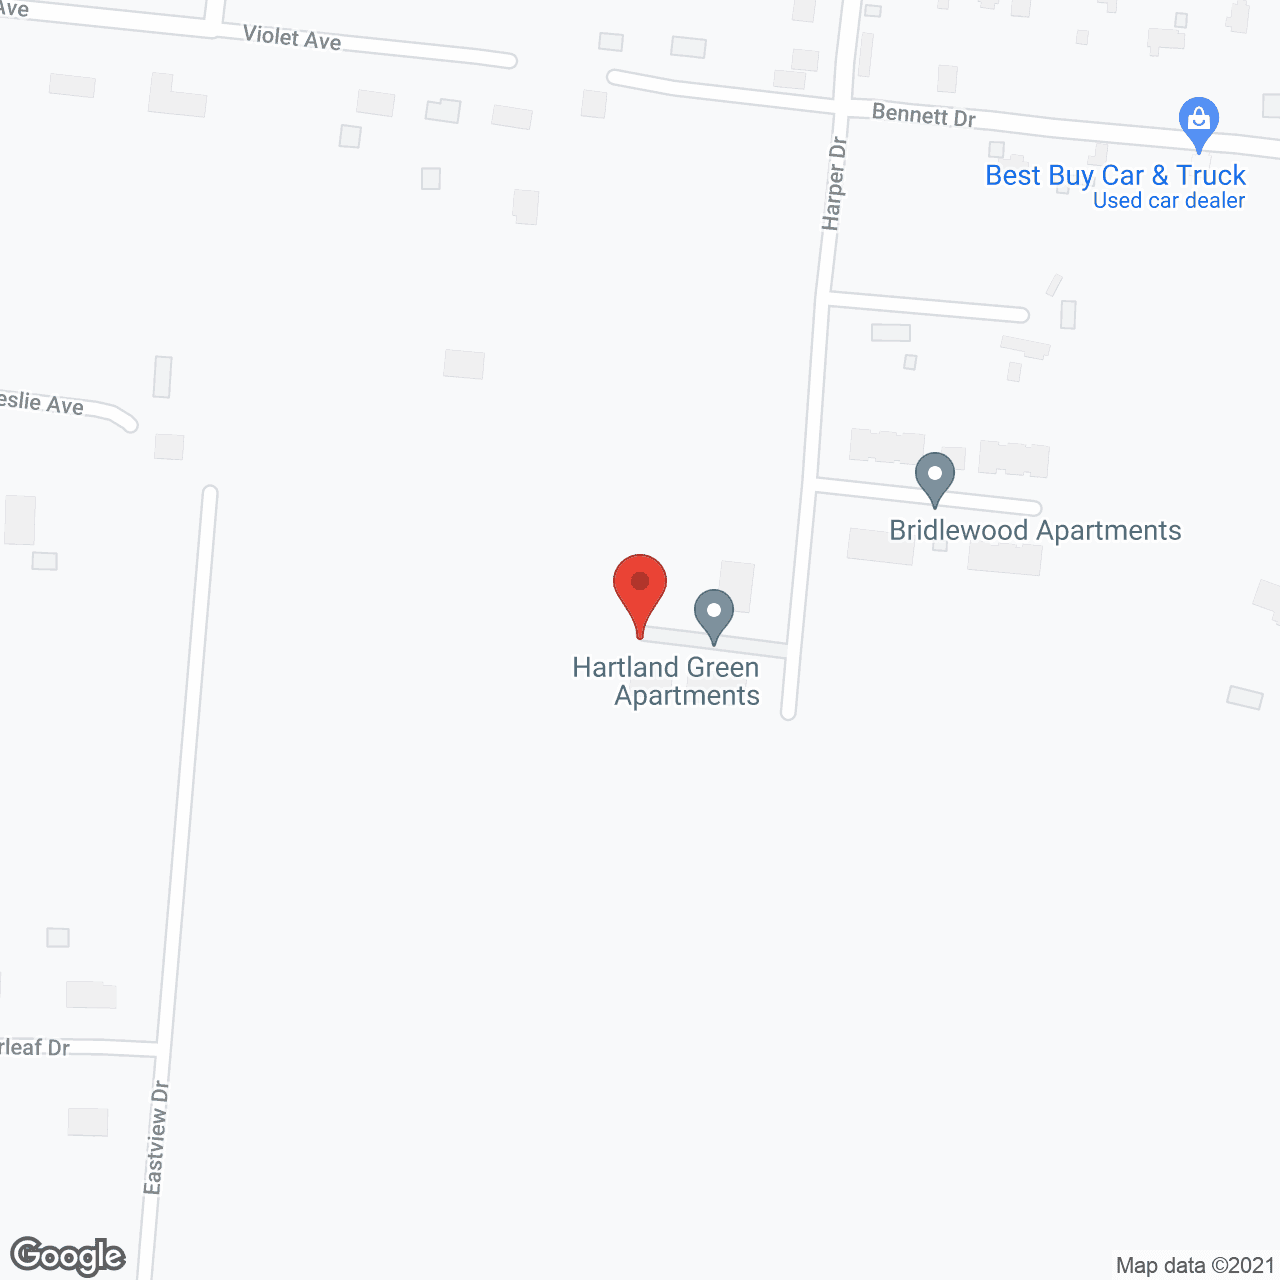 Hartland Green in google map